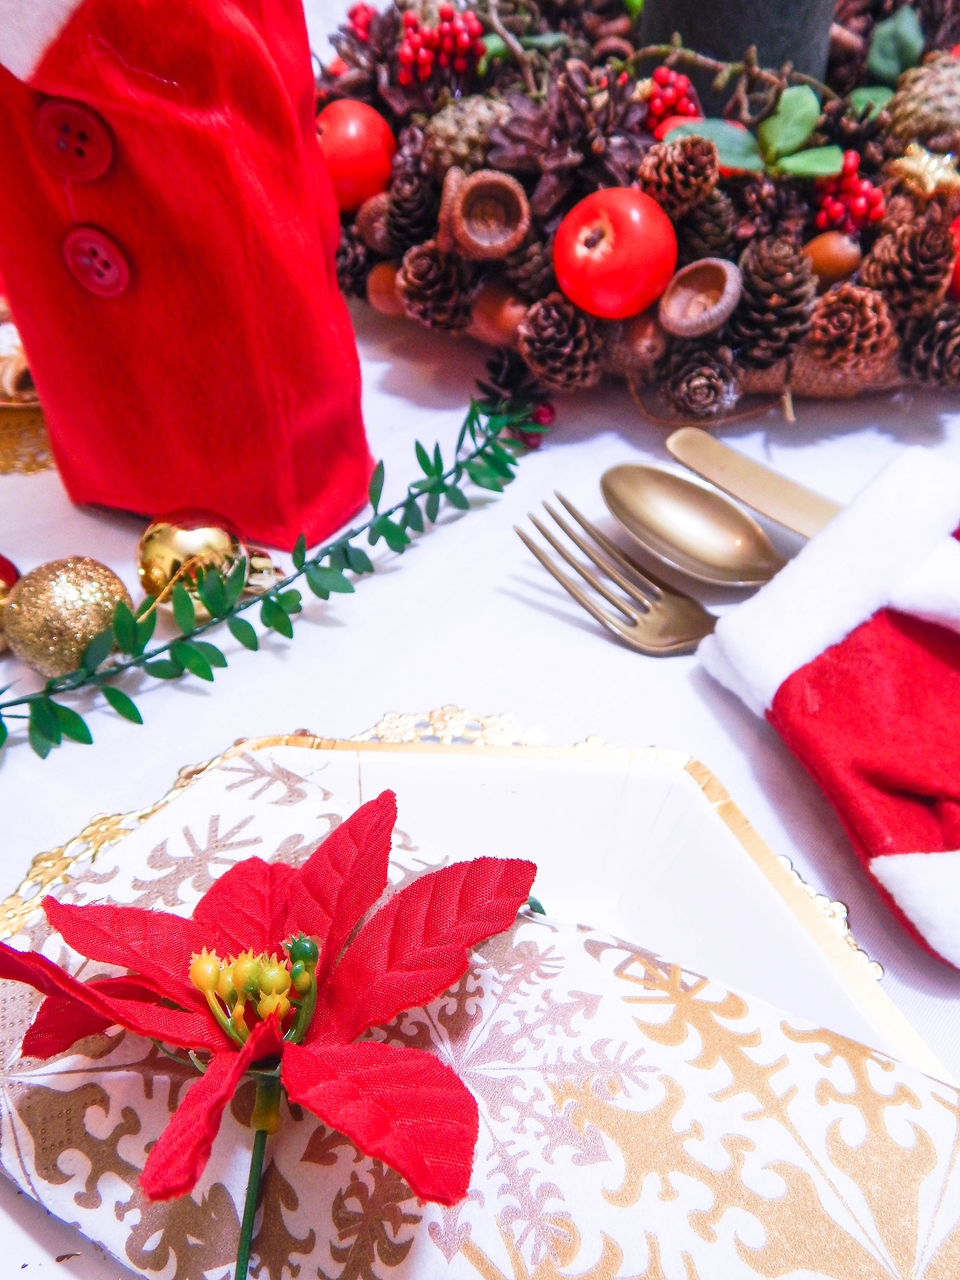 13 dekoracja świątecznego stołu jak udekorować stół na boże narodzenie dekoracja kolacja wigilijna dekoracja stroik na stół wigilijny wianek świeczka mikołajowe ubrania na butelki mikołaje na sztućce